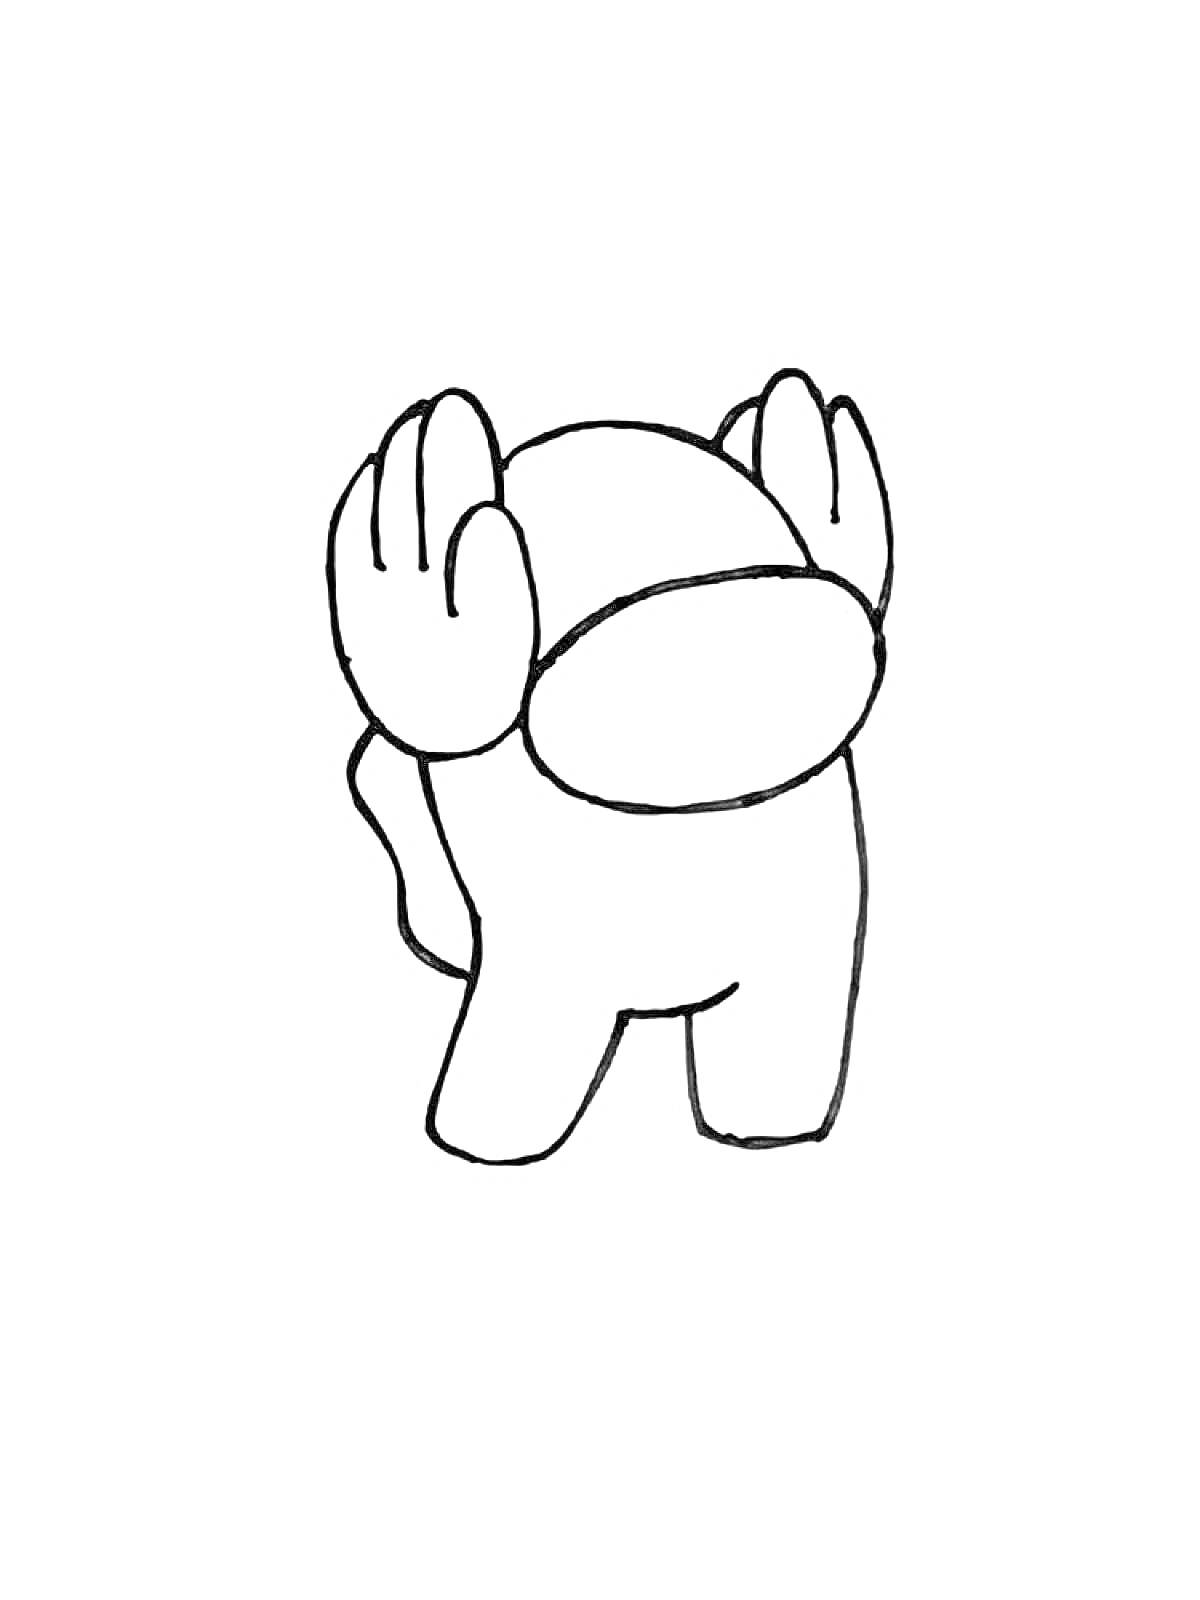 Раскраска Персонаж Амонг Ас с поднятыми руками